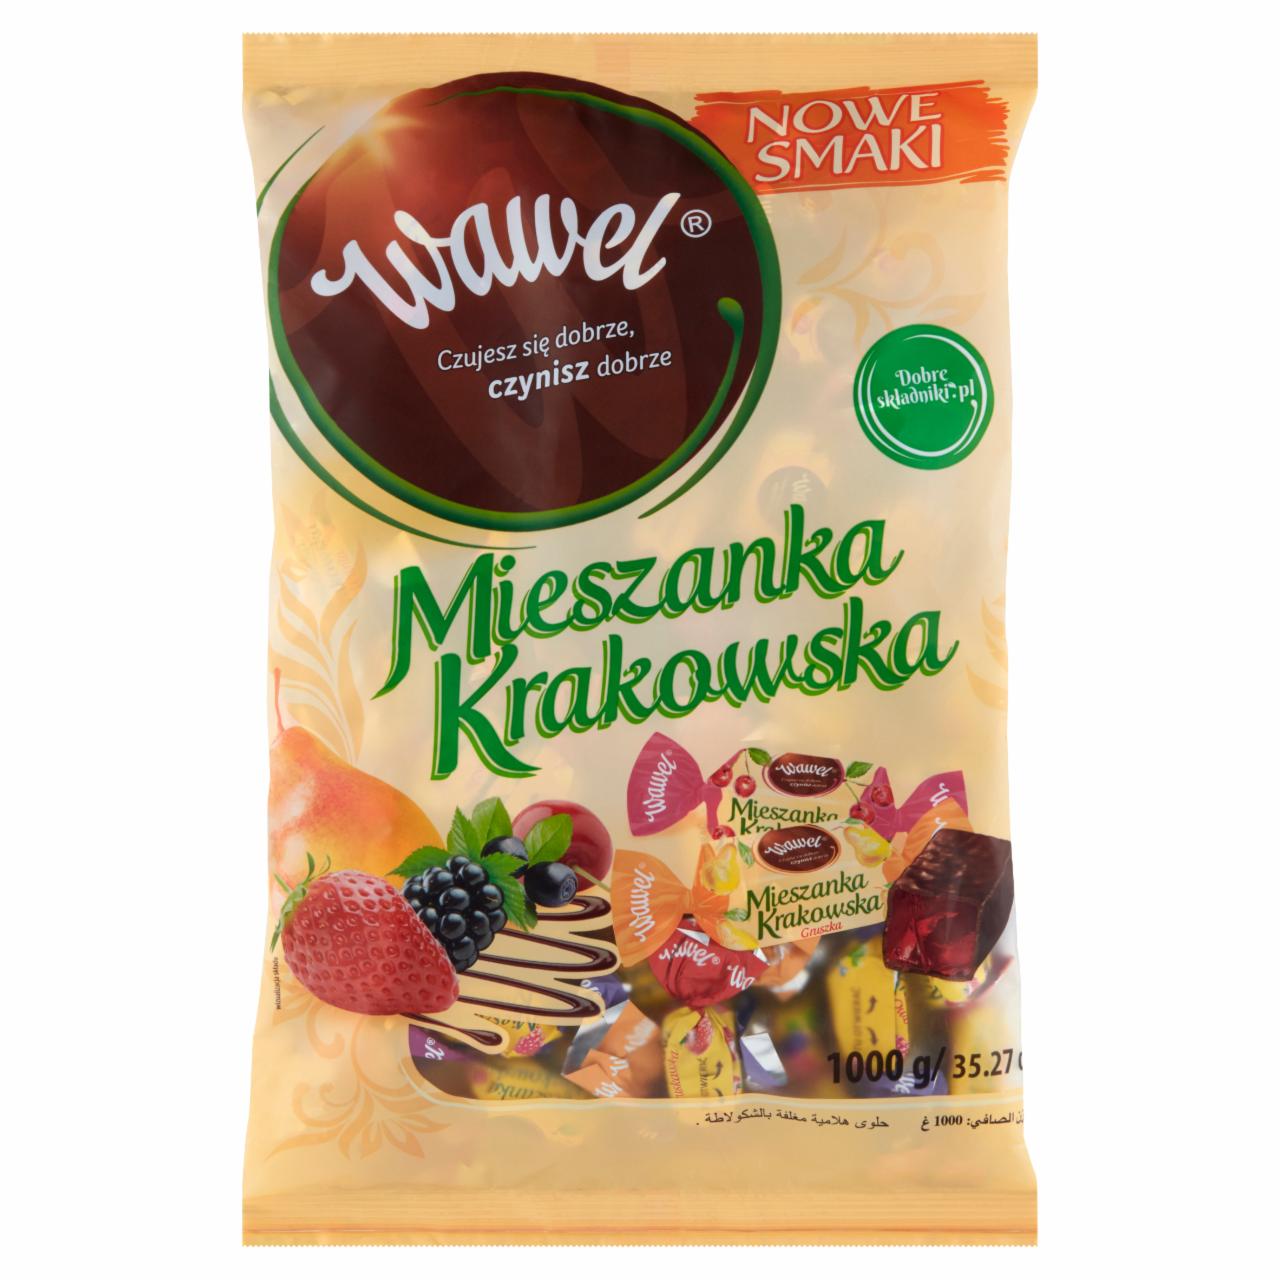 Zdjęcia - Wawel Mieszanka Krakowska Nowe smaki Galaretki w czekoladzie 1000 g